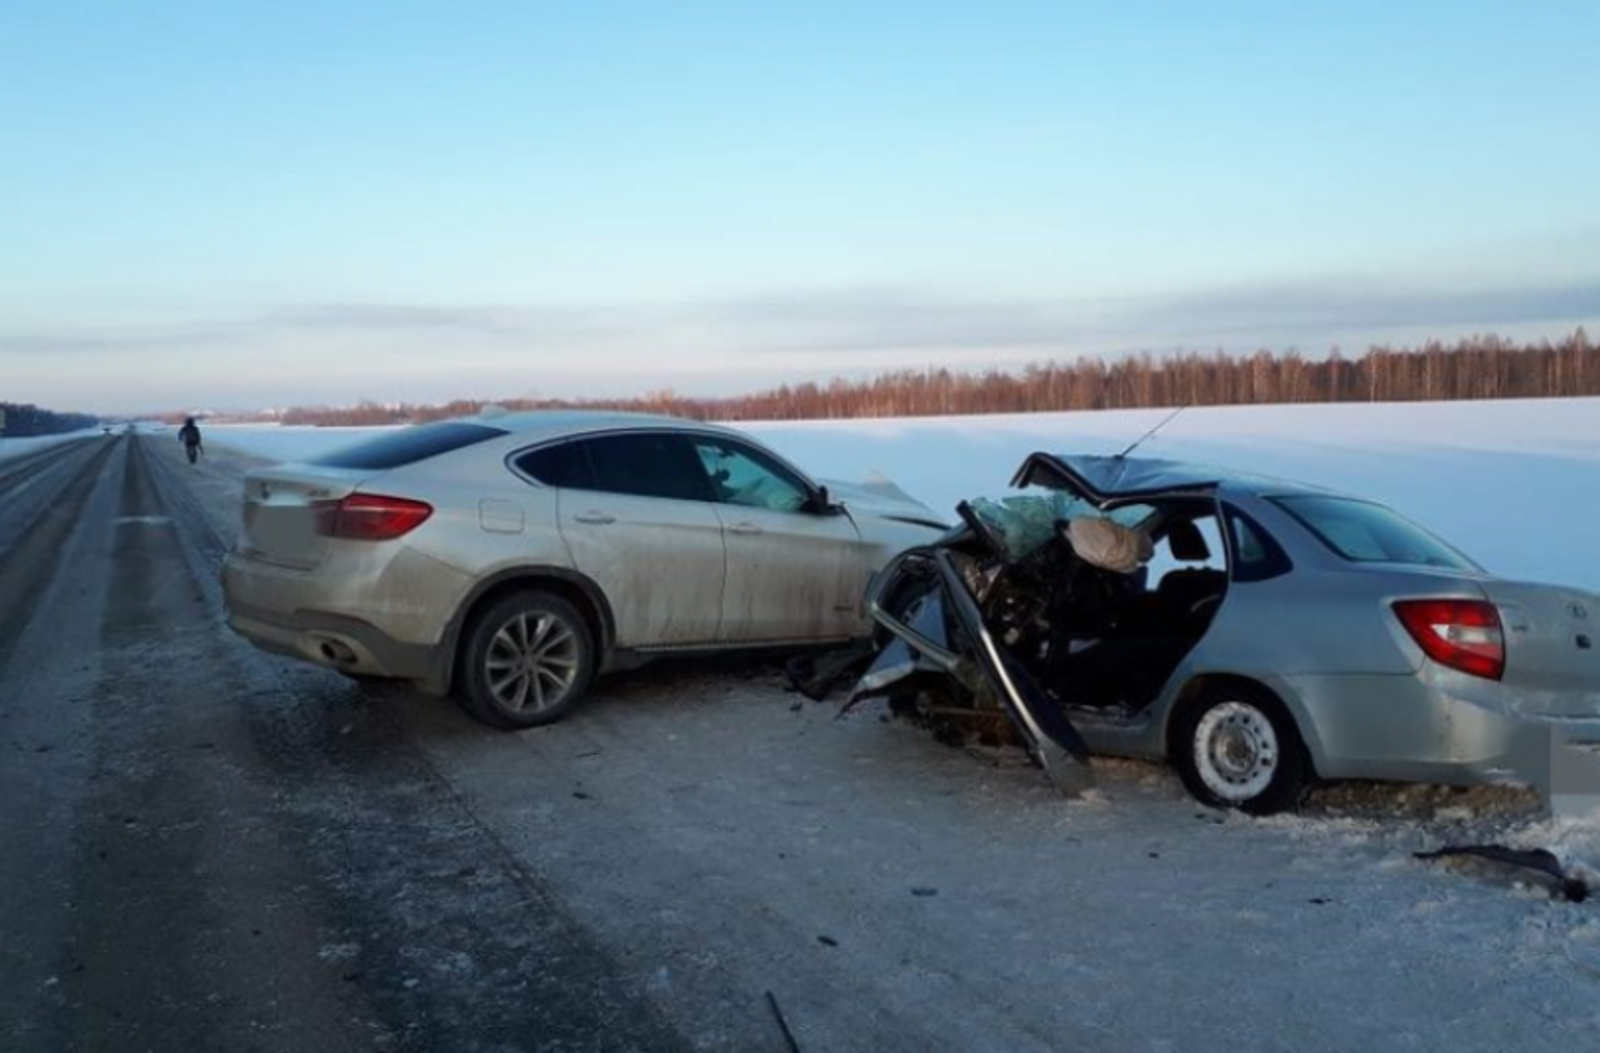 Смертельная авария произошла в Архангельском районе сегодня утром, 25 декабря